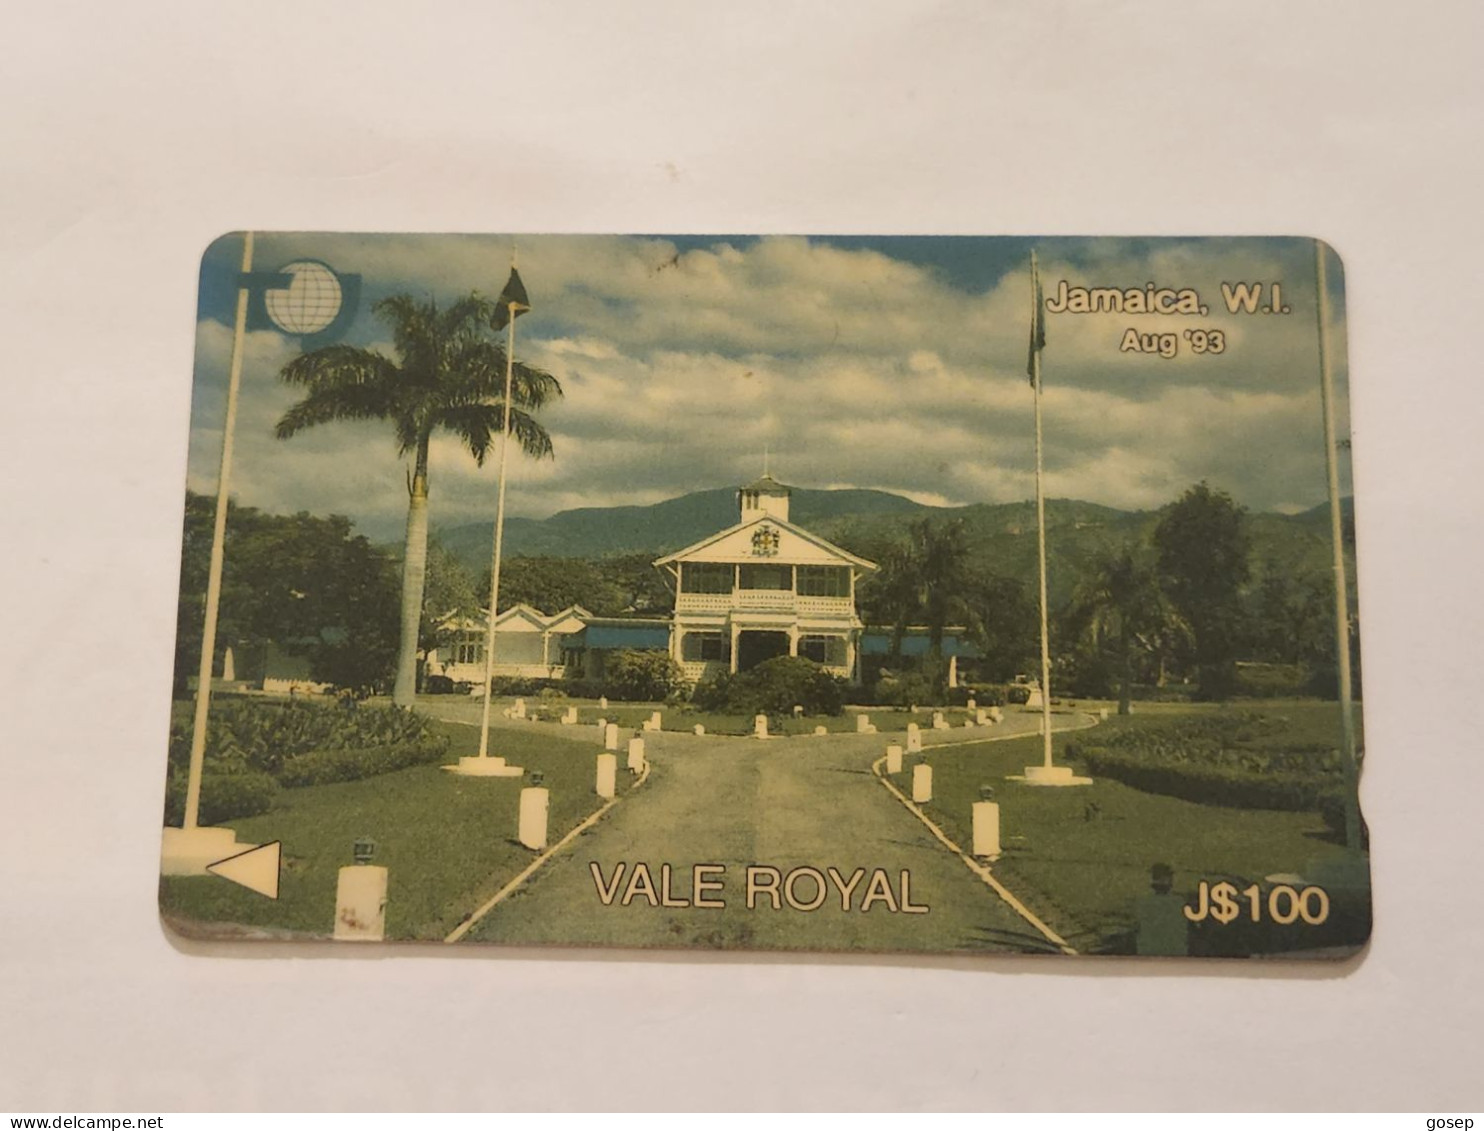 JAMAICA-(15JAMA(a)-JAM-15A-(a))-Vale Royal-August-93-(28)-(15JAMA126364)-(J$100)-used Card+1card Prepiad - Jamaïque